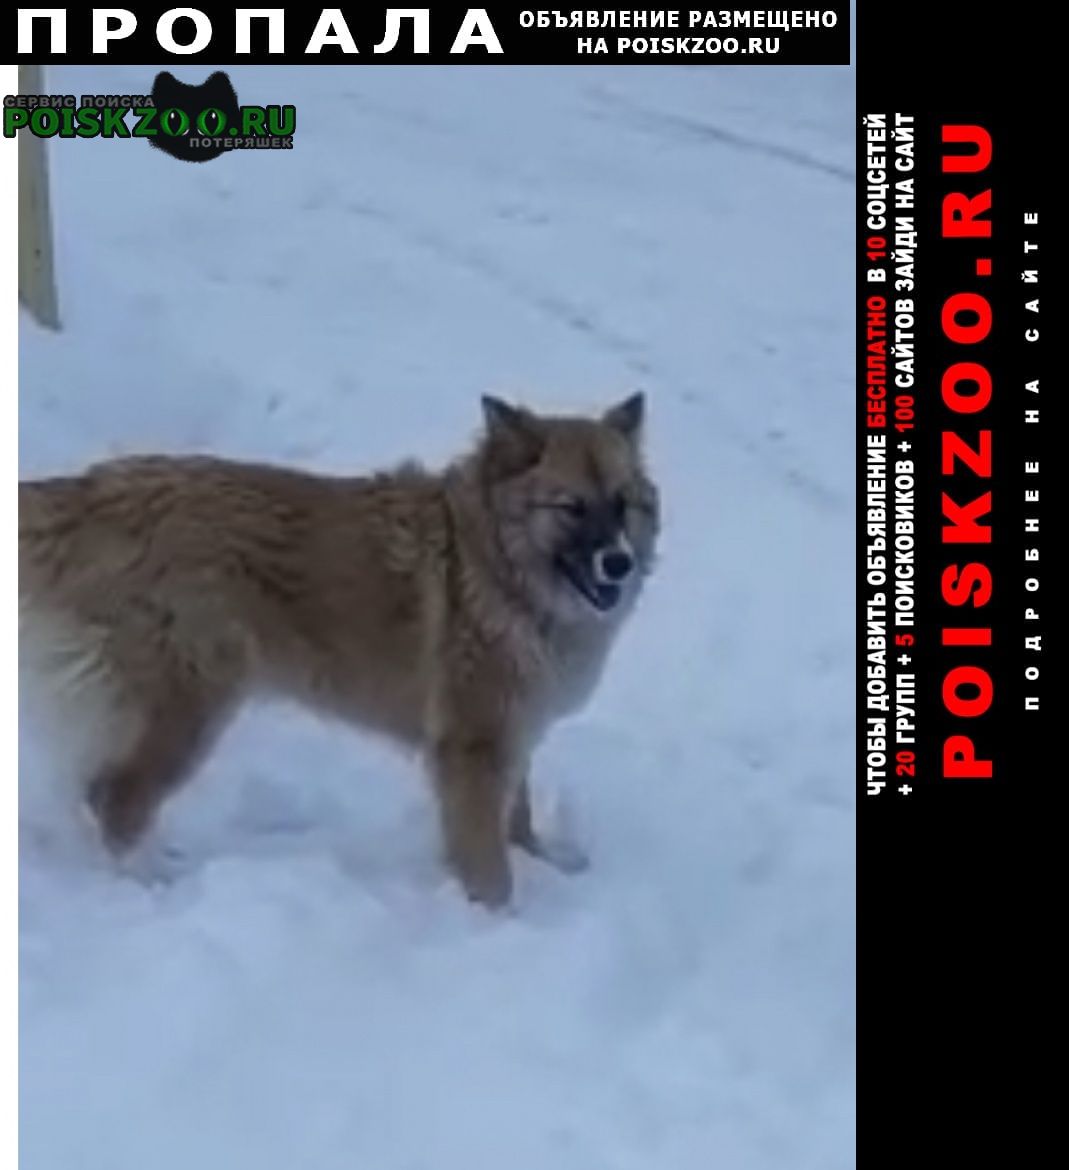 Актобе (Актюбинск) Пропала собака помогите найти люси